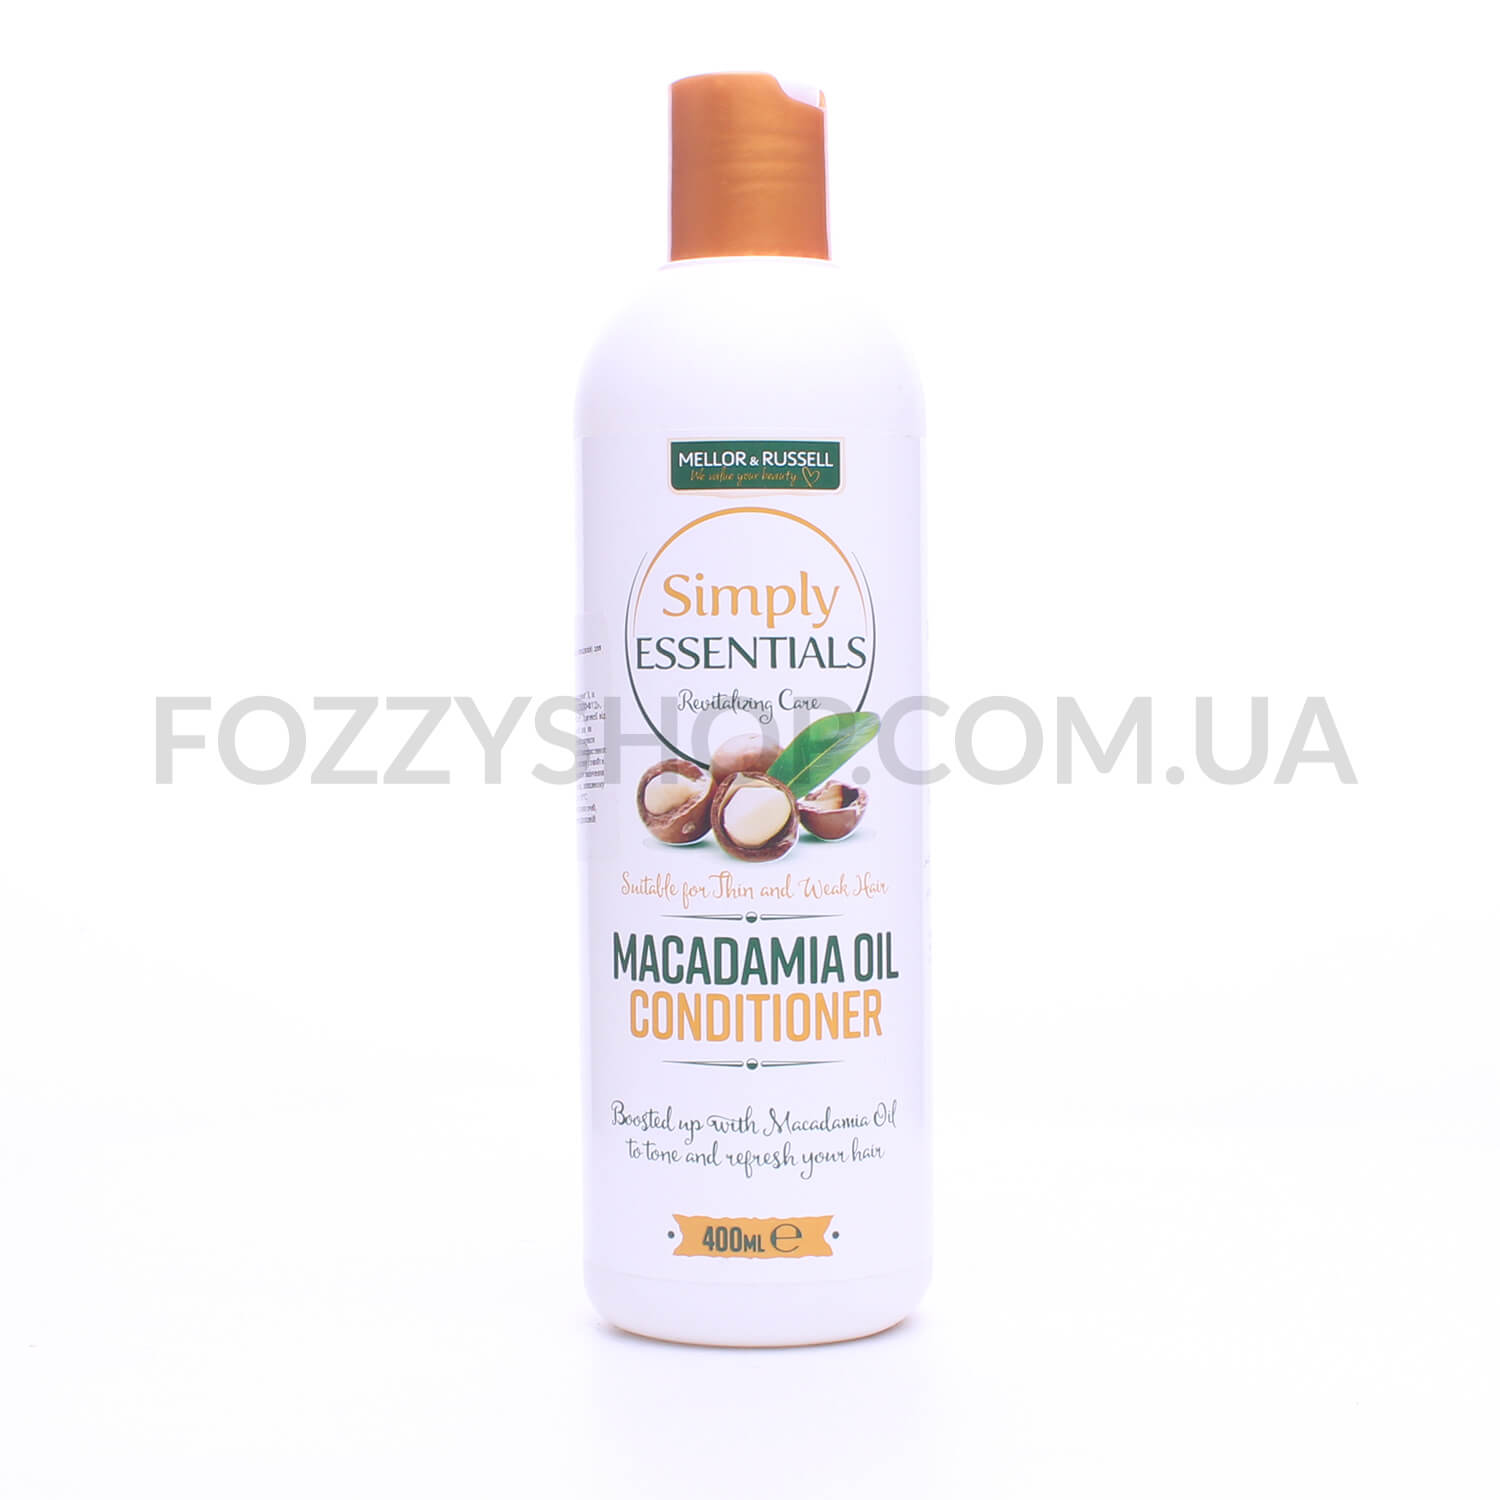 Кондиционер Simply Essentials Macadamia восстанов